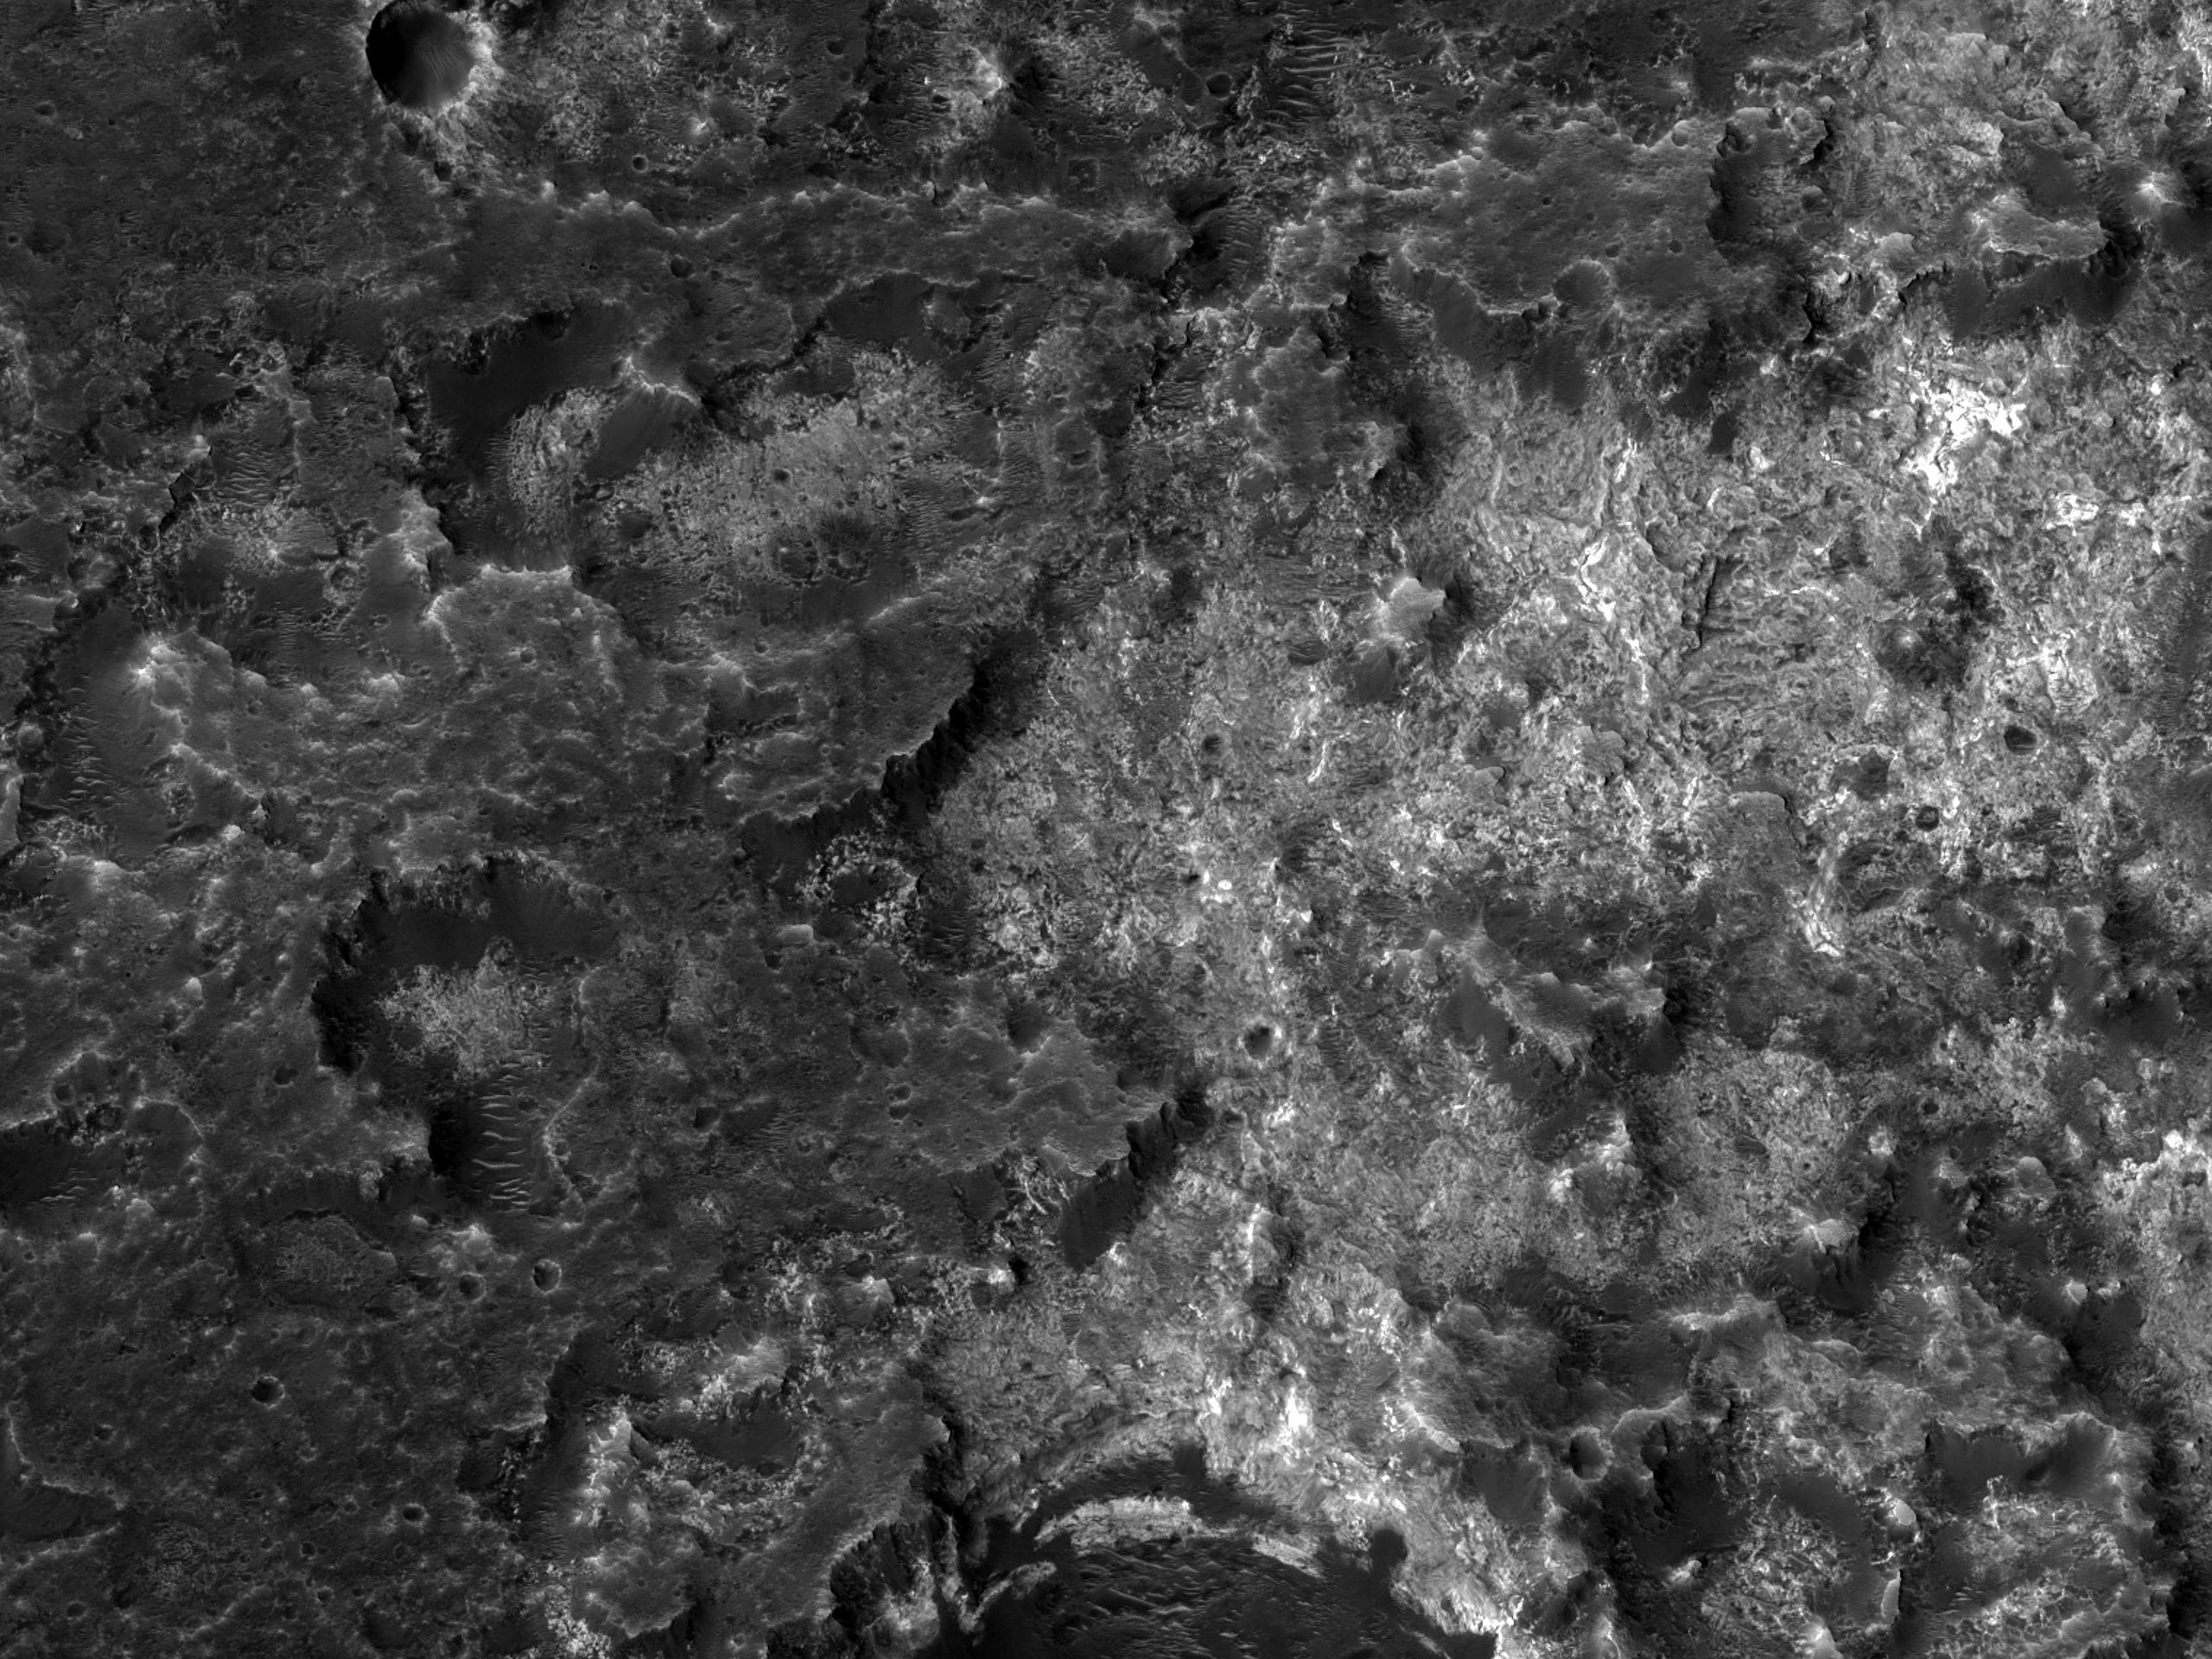 马沃斯谷里将来的可能着陆点 (ExoMars, Mawrth Vallis)